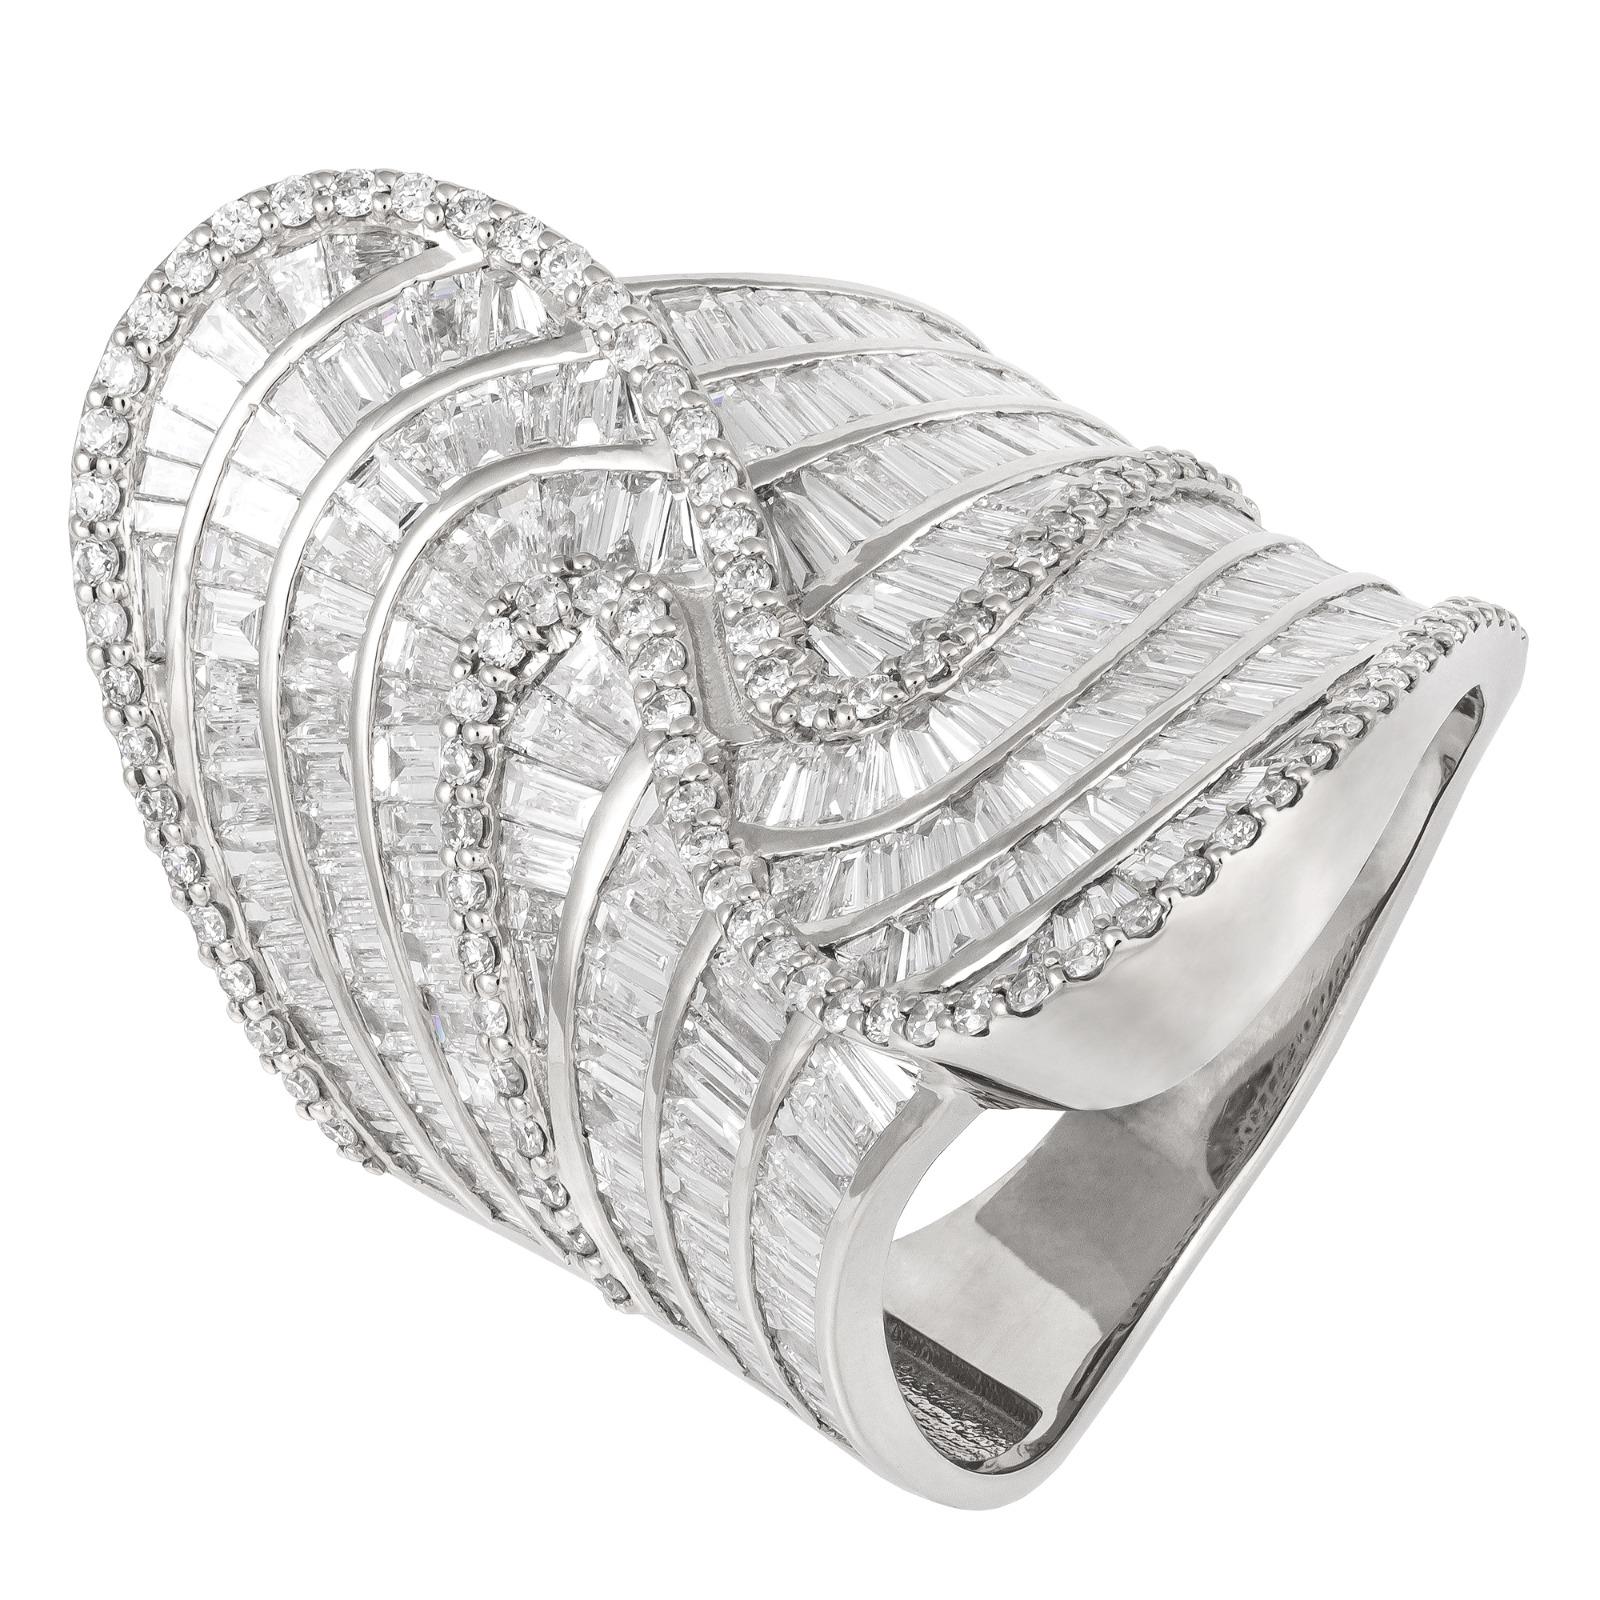 For Sale:  Stunning White 18K Gold White Diamond Ring for Her 2